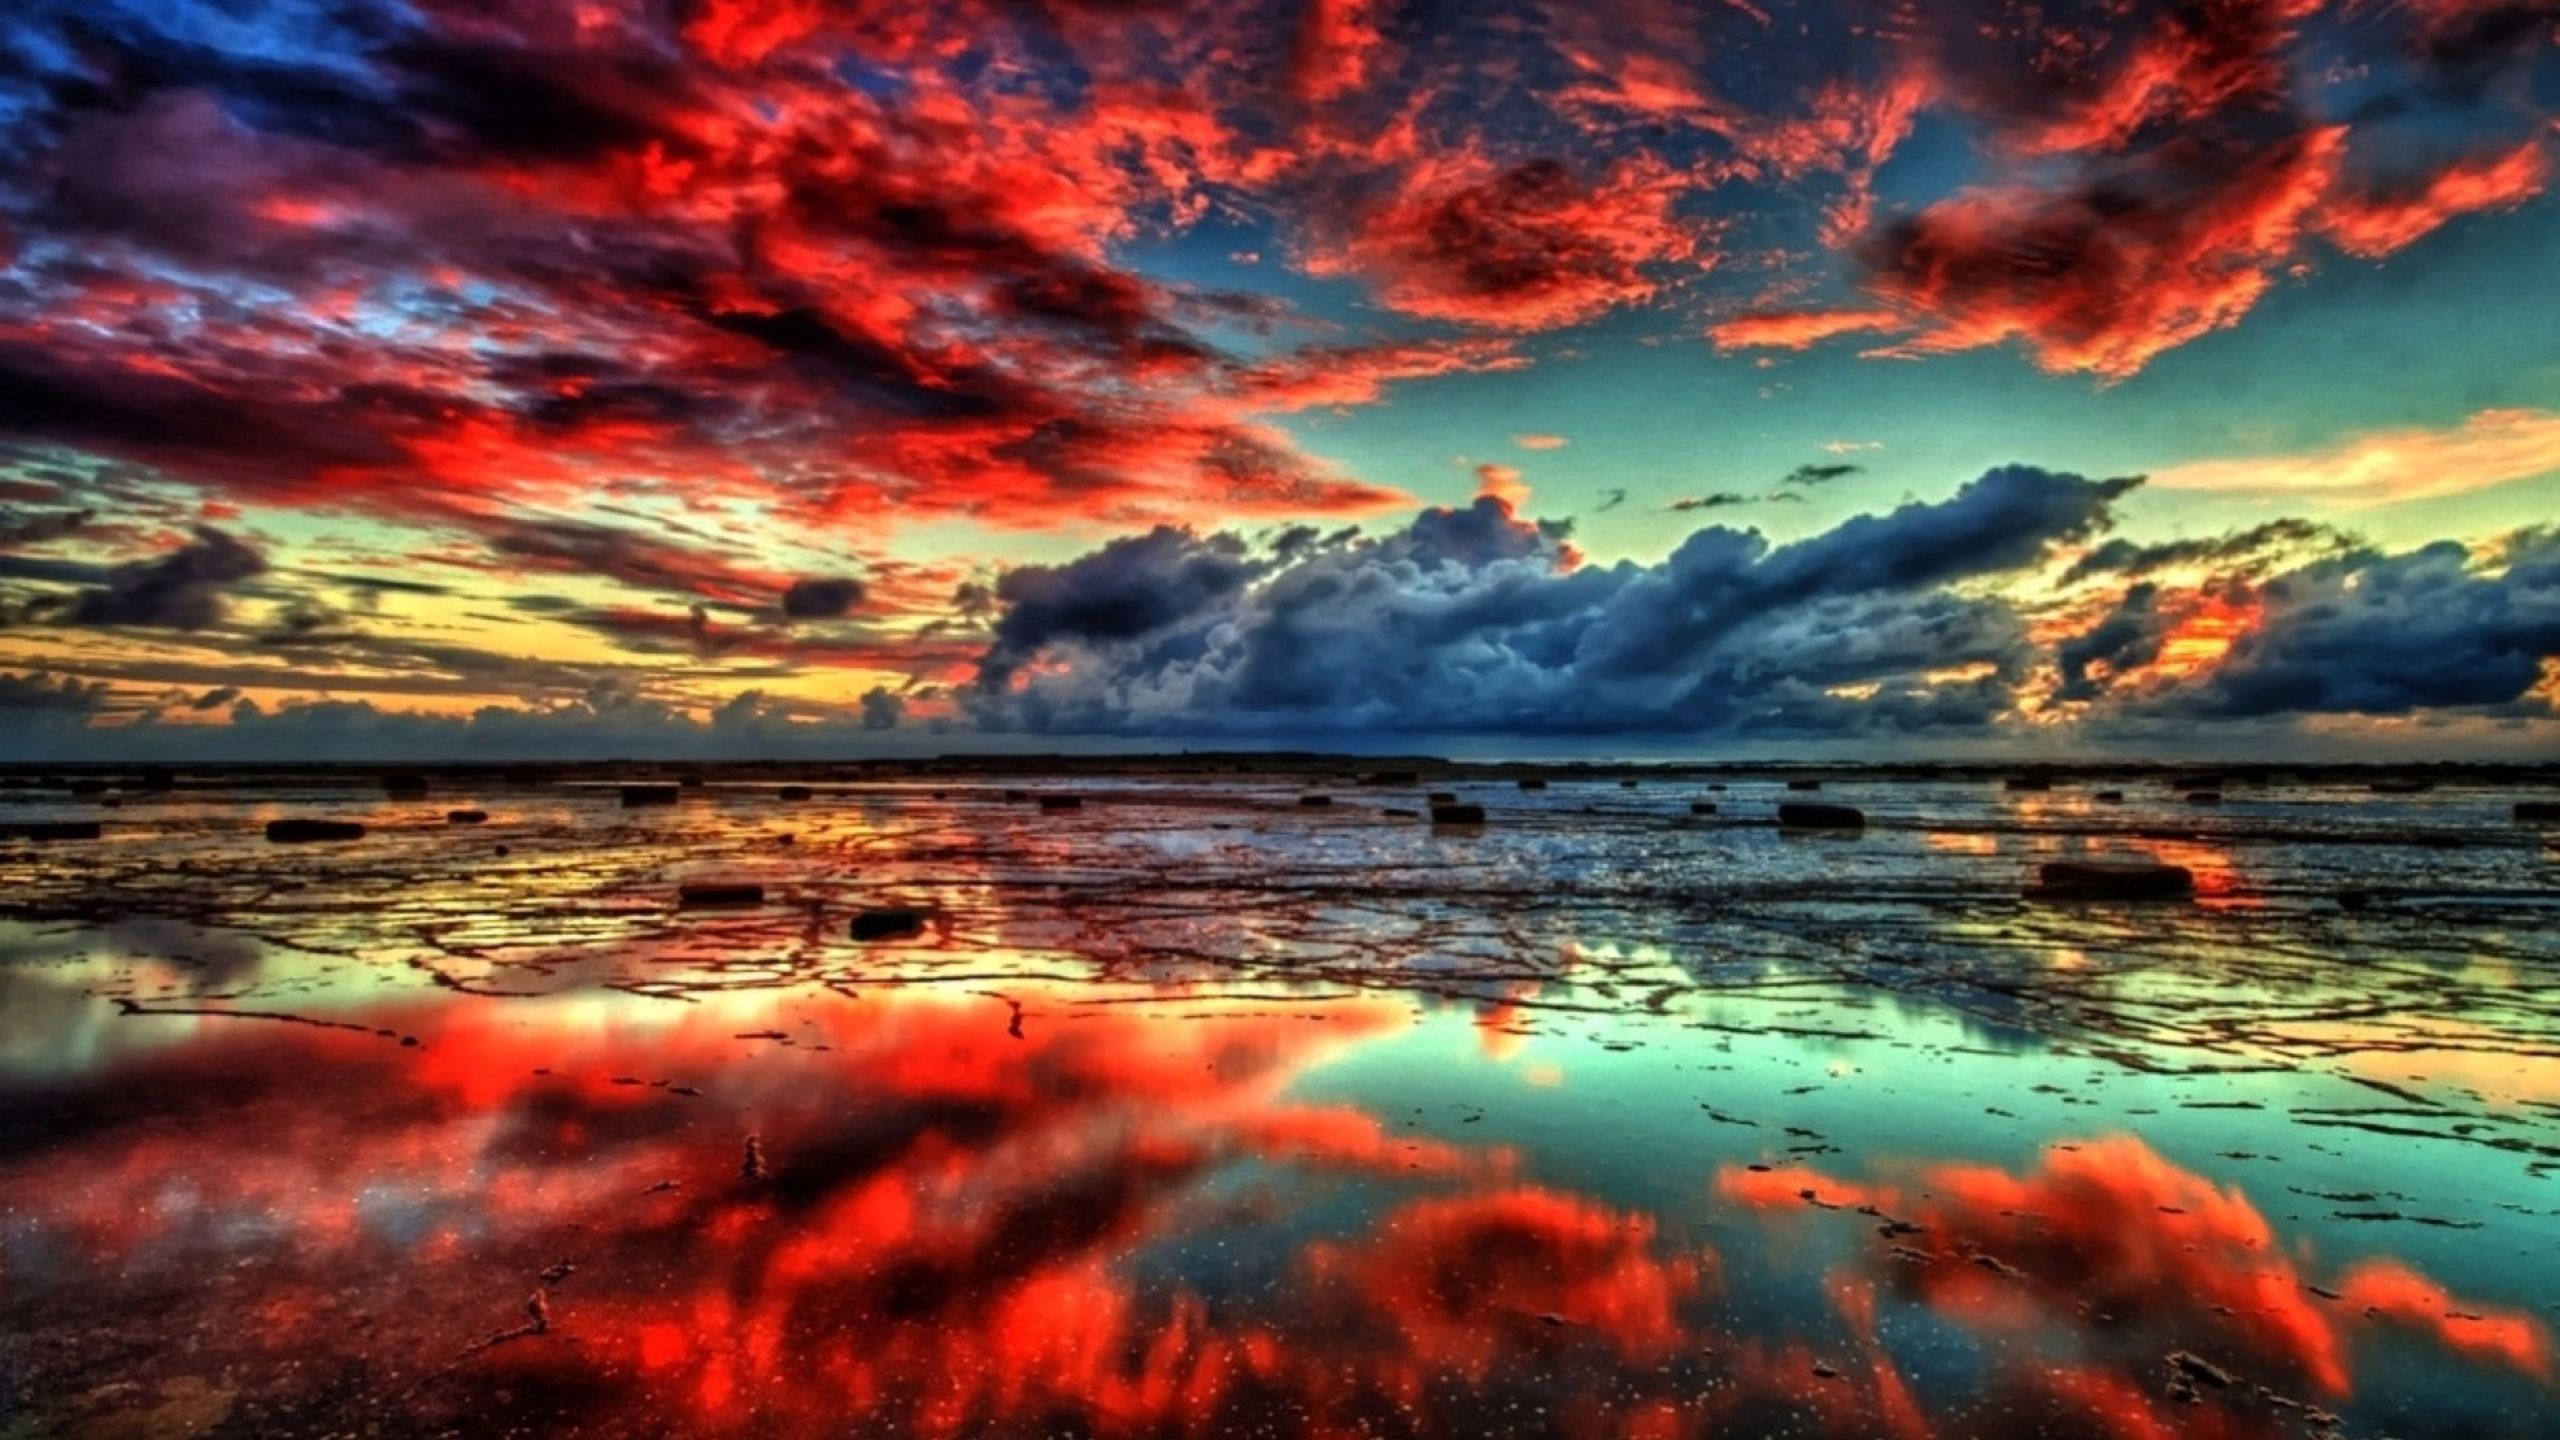 Mây đỏ thiên nhiên: Đắm mình vào vẻ đẹp tự nhiên đầy man mác và bí ẩn của mây đỏ, bạn sẽ tìm thấy một trạng thái tĩnh lặng và sự khoan khoái khi đắm mình vào quá trình quan sát và suy ngẫm.